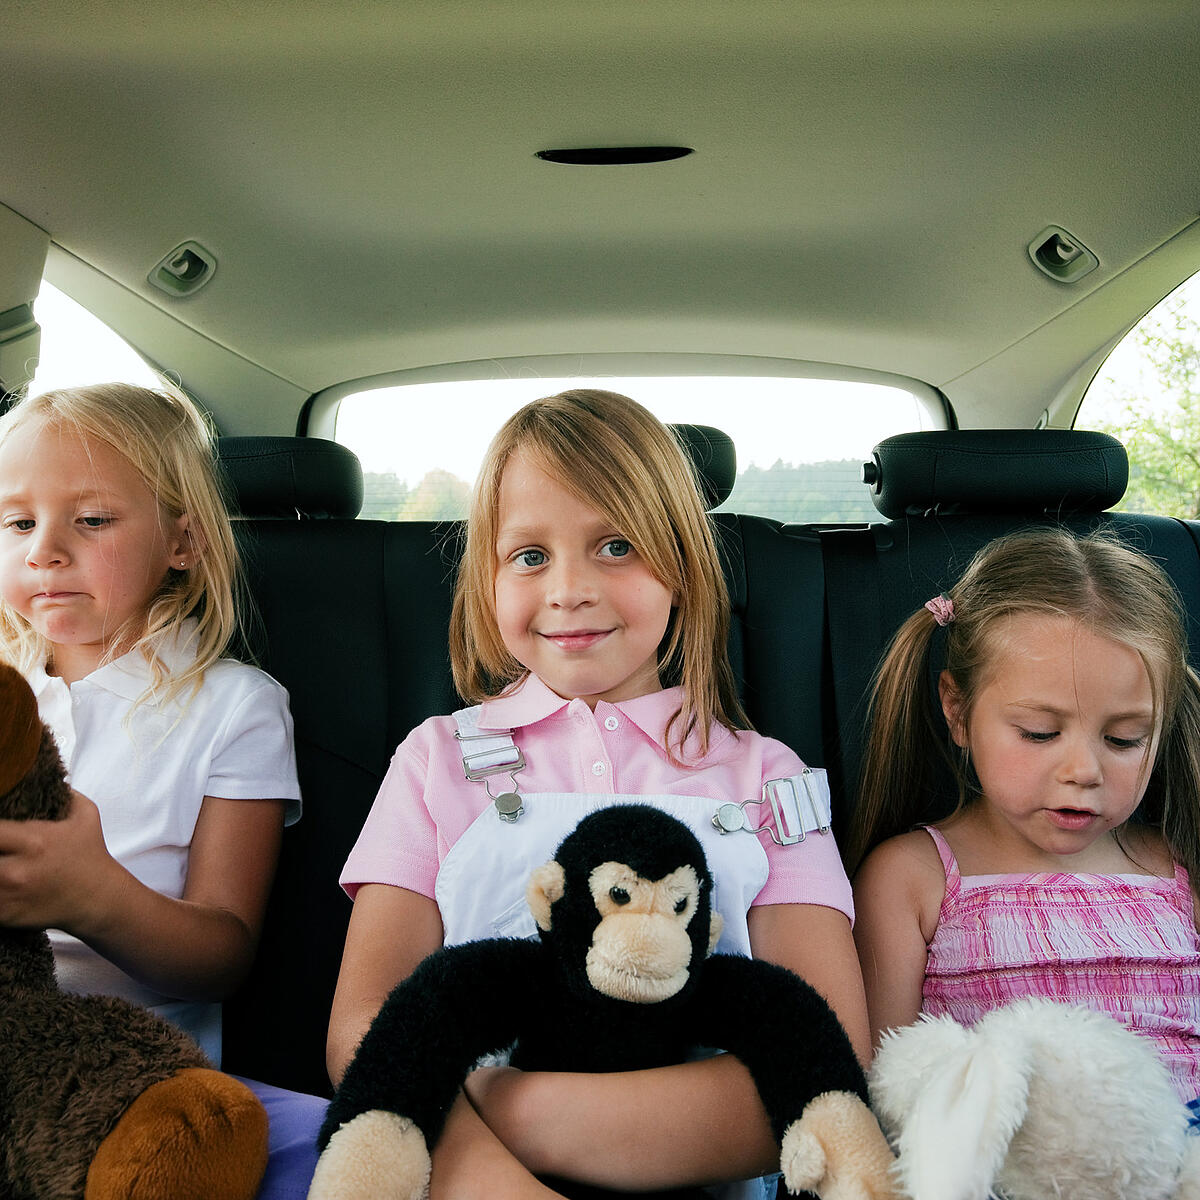 Kindersicherung im Auto: Ab 1,35 Meter genügt der Gurt